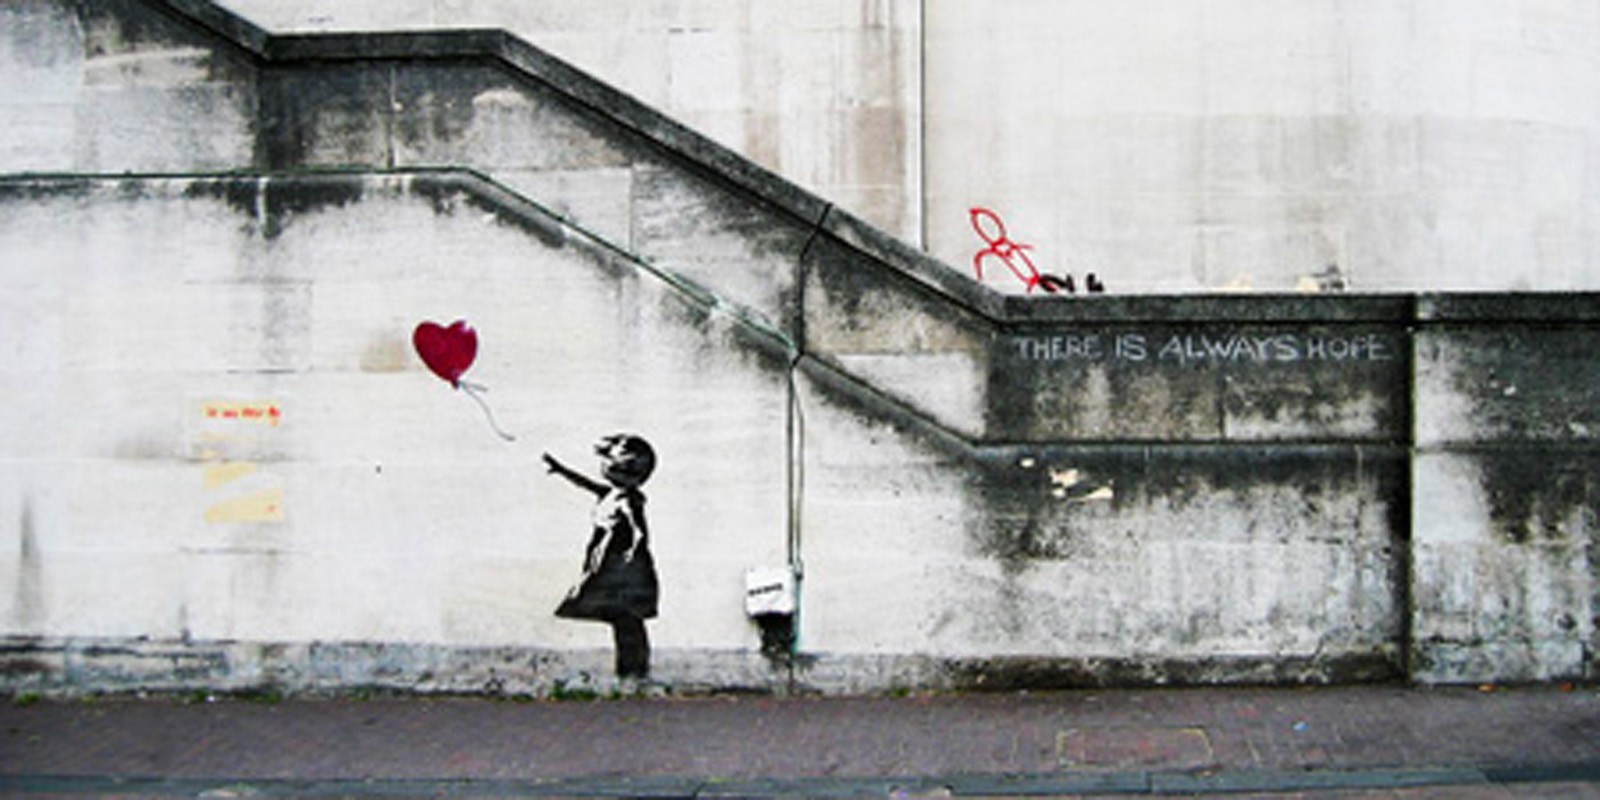 Banksy - South Bank, London